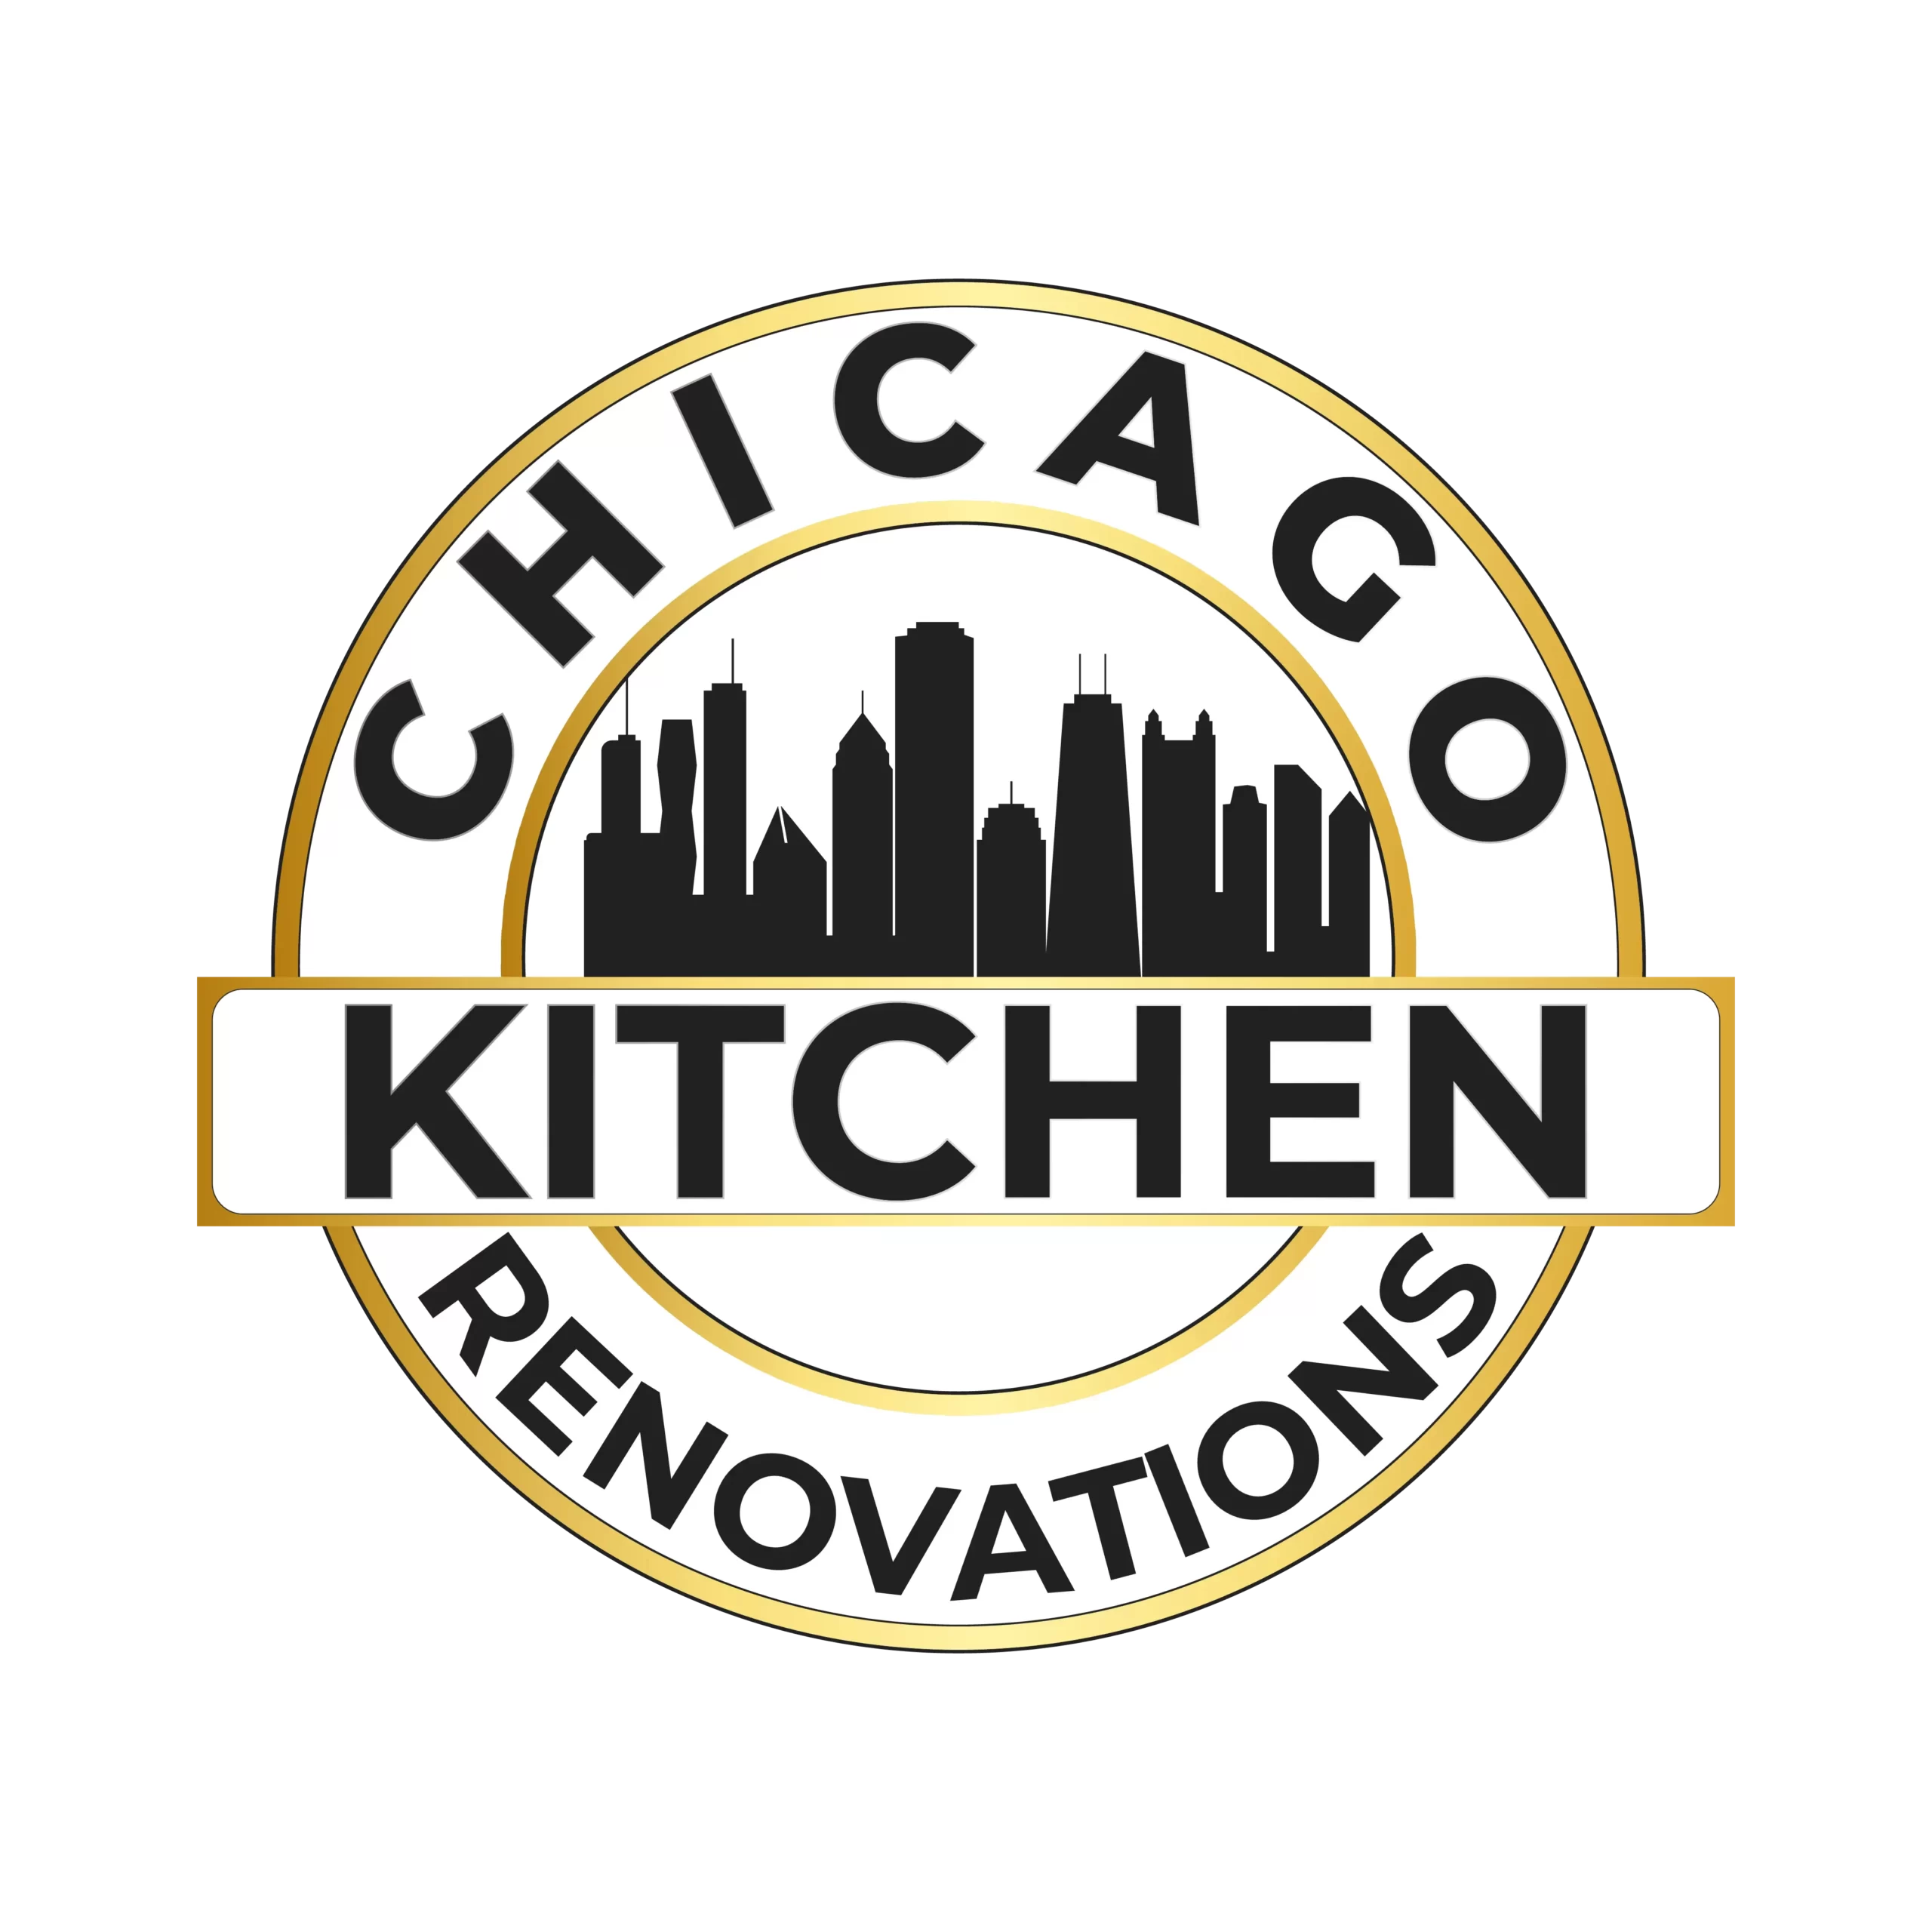 chicago kitchen renovation logo 1